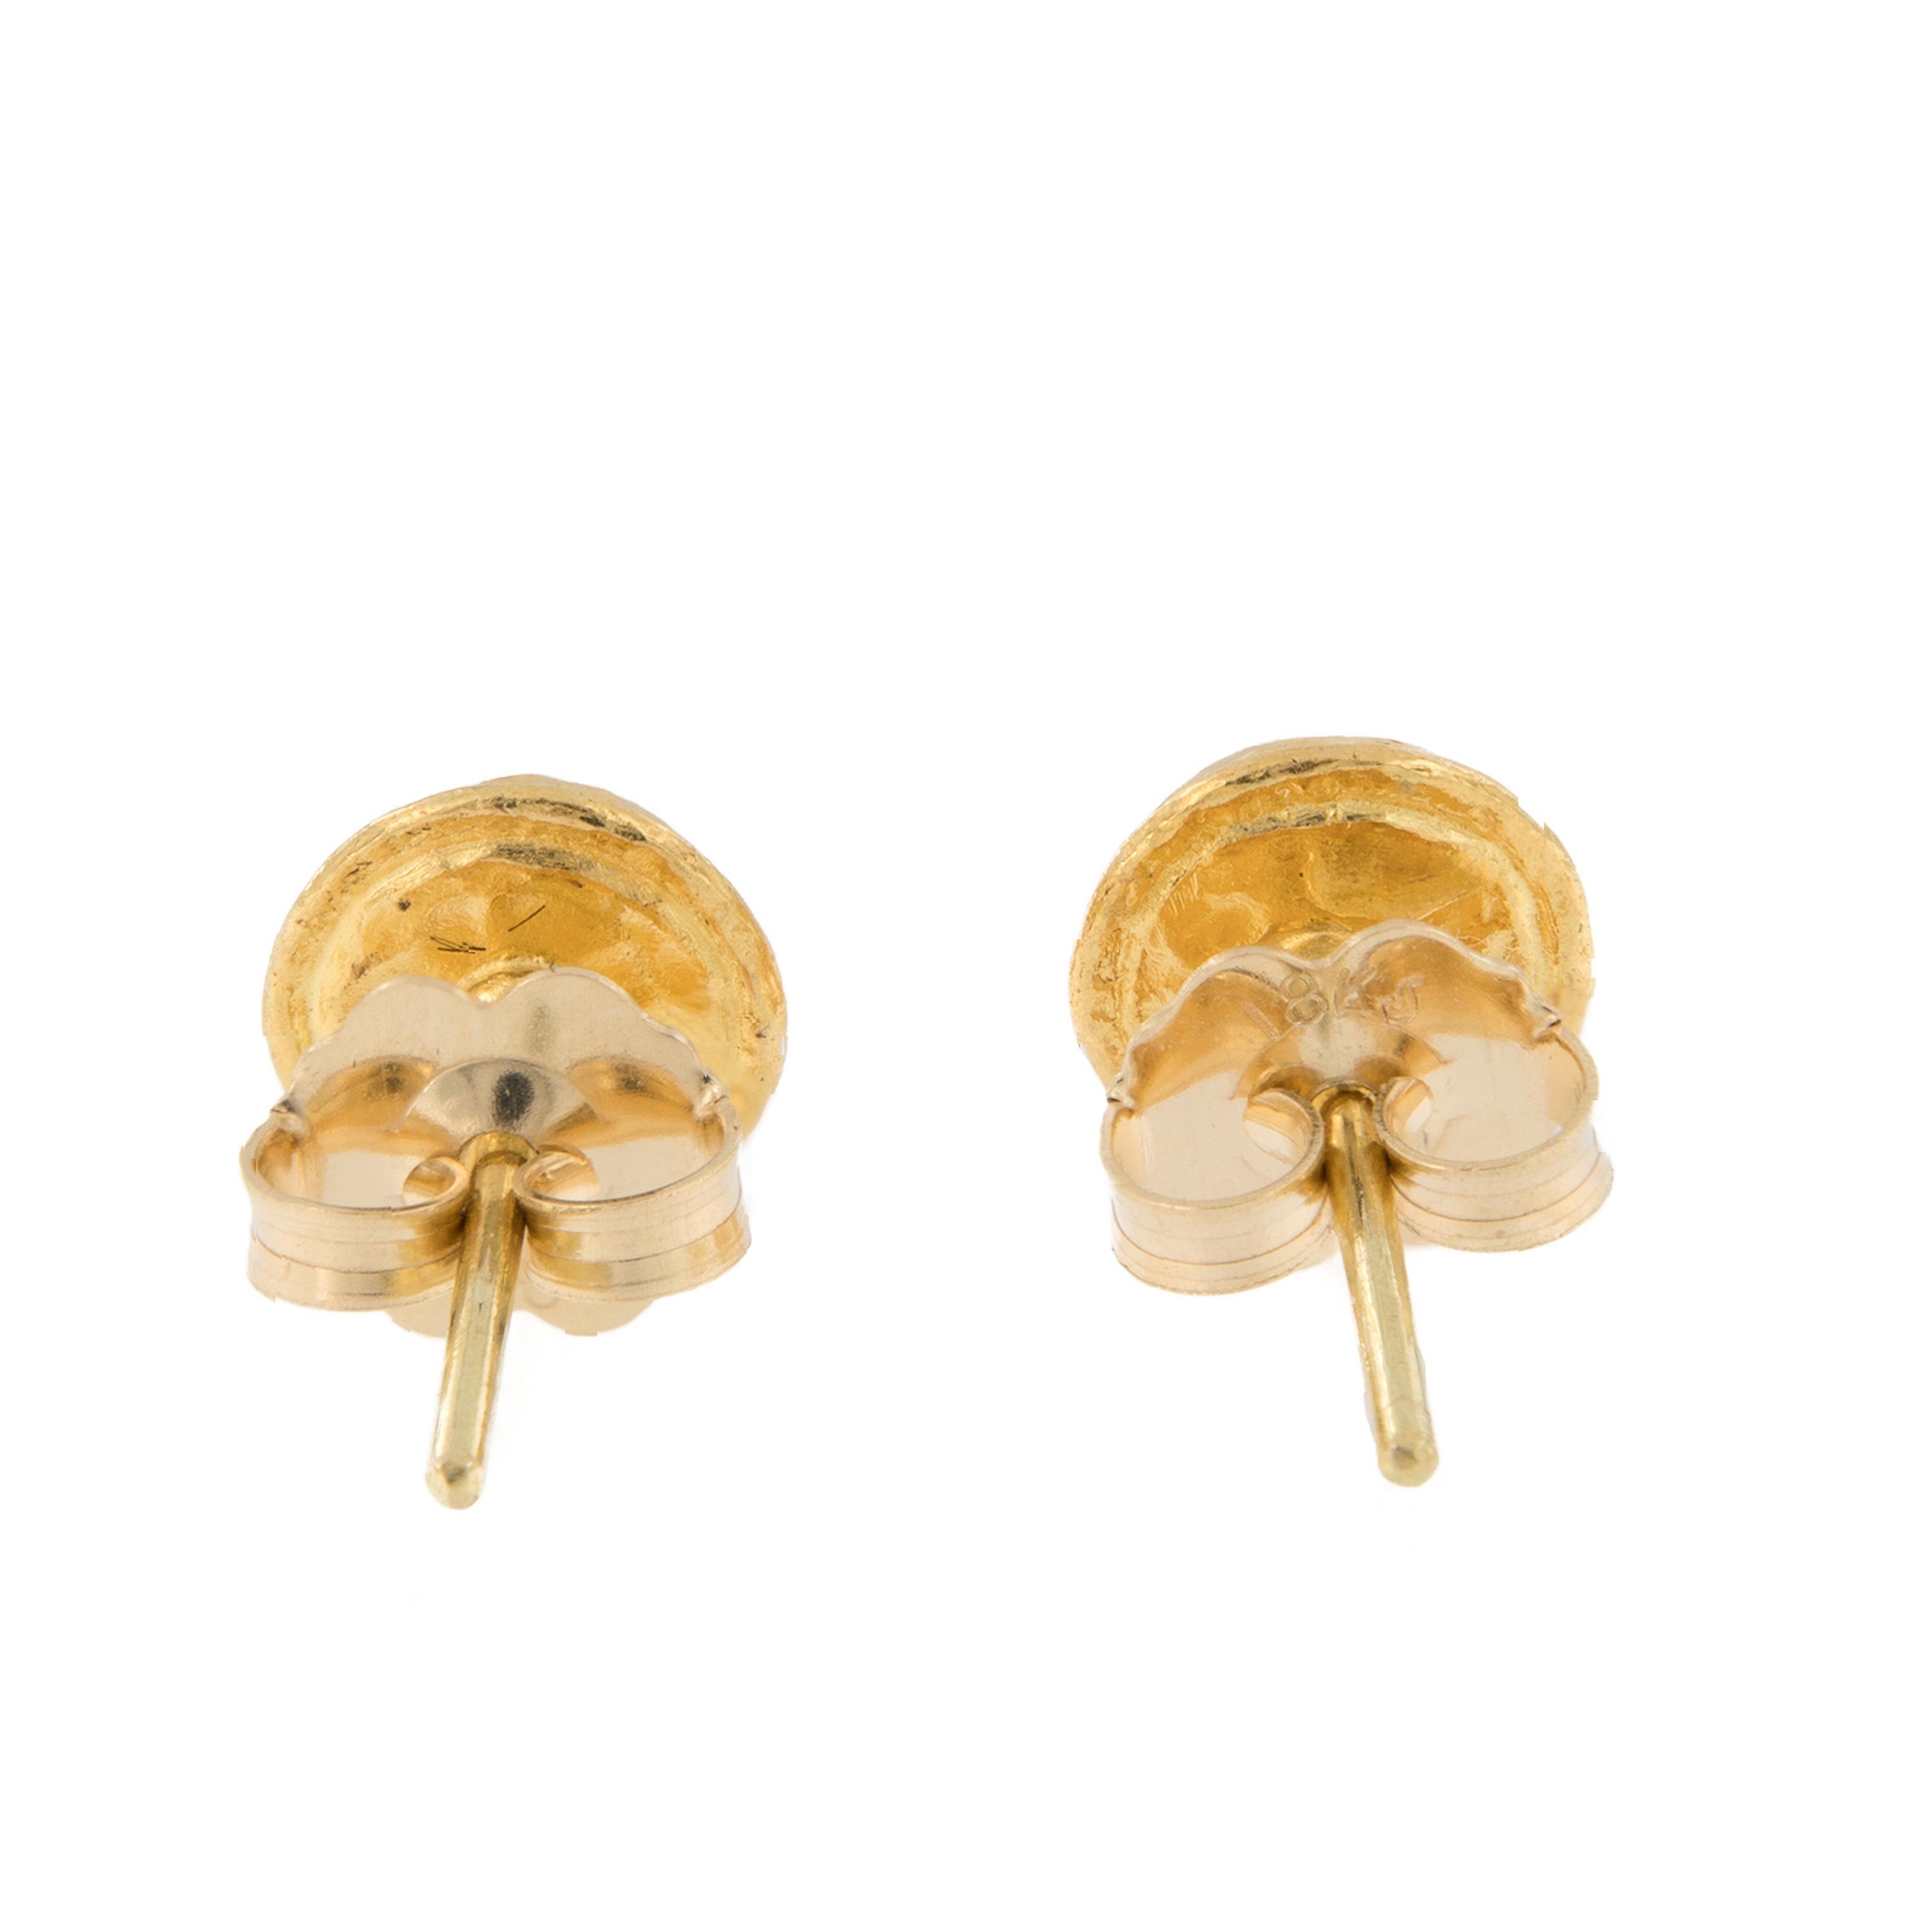 Wie bezaubernd sind diese seltenen Katzenaugen-Chrysoberyll-Ohrringe? 24-karätiges Gold ist das seltenste aller Goldsorten und hat eine ausgeprägte, satte Farbe, die von Anlegern auf der ganzen Welt geschätzt wird und die durch das